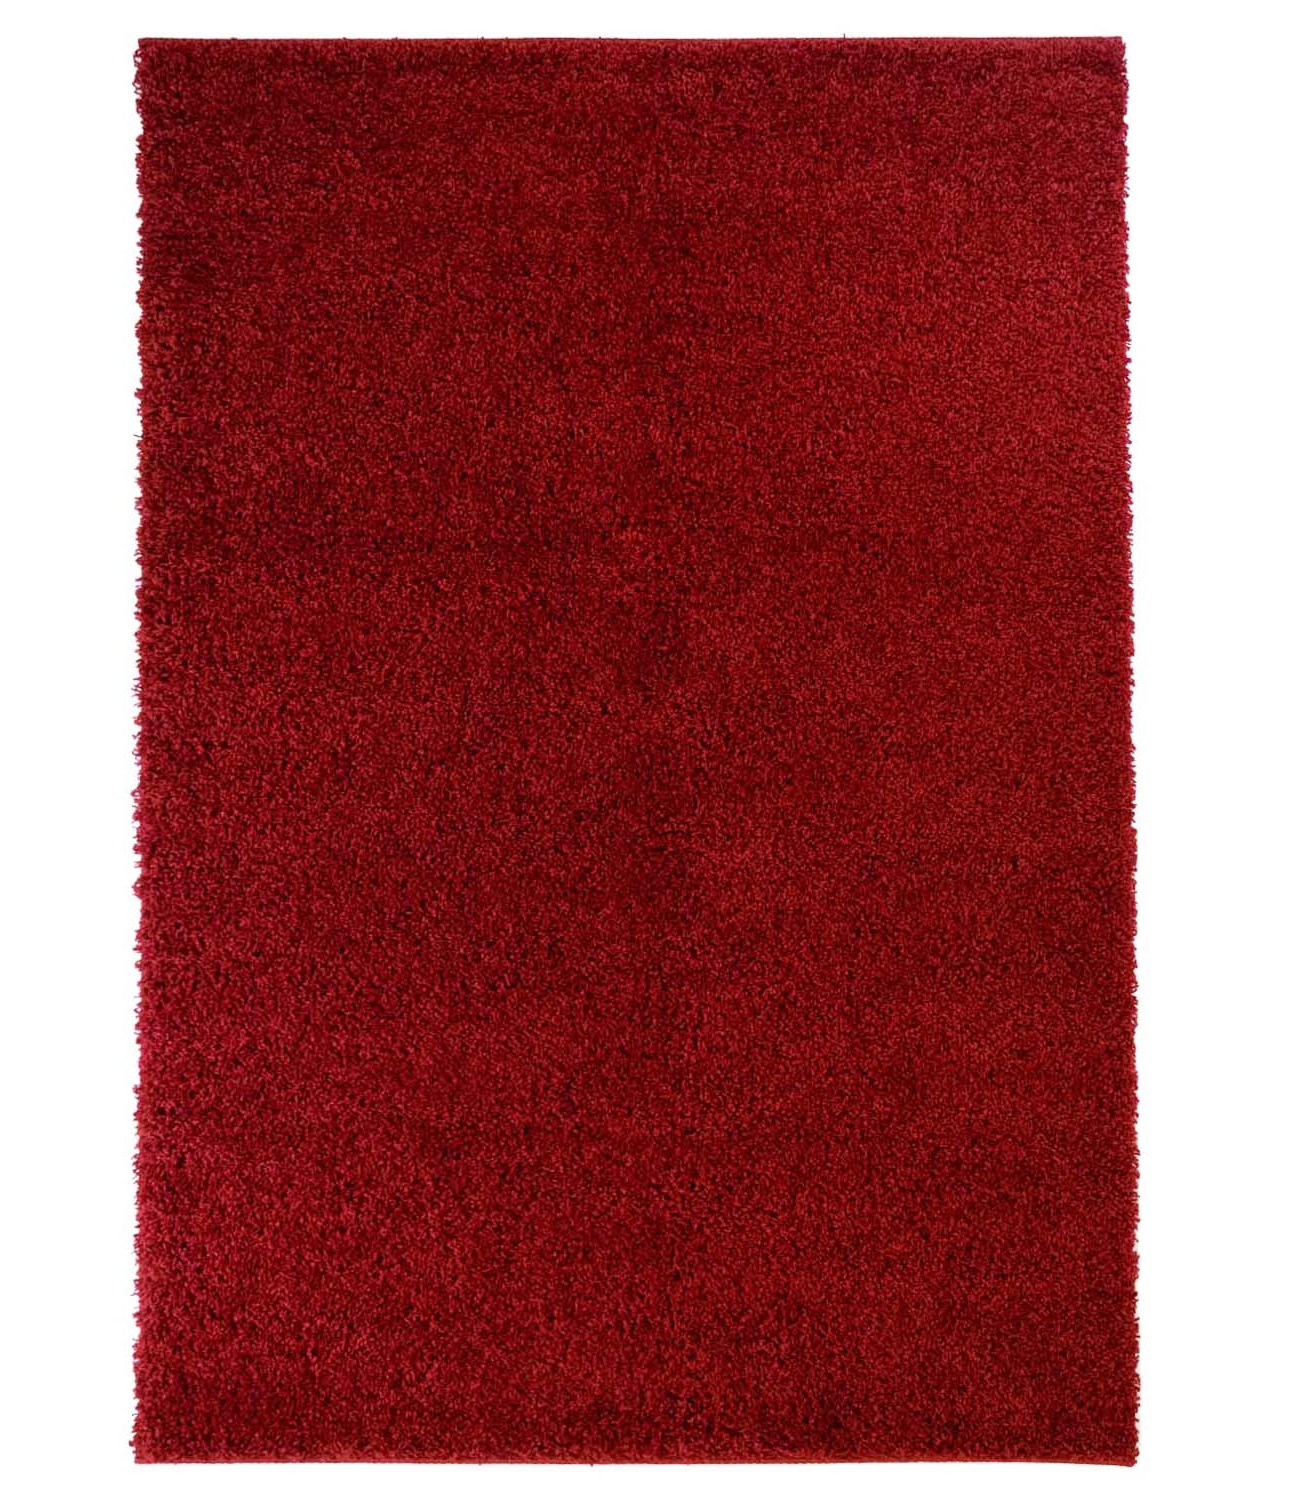 Trim hochflorteppich rot shaggy teppich rund hochflor wohnzimmer 60x120 cm 80x 150 cm 140x200 cm 160x230 cm 200x300 cm